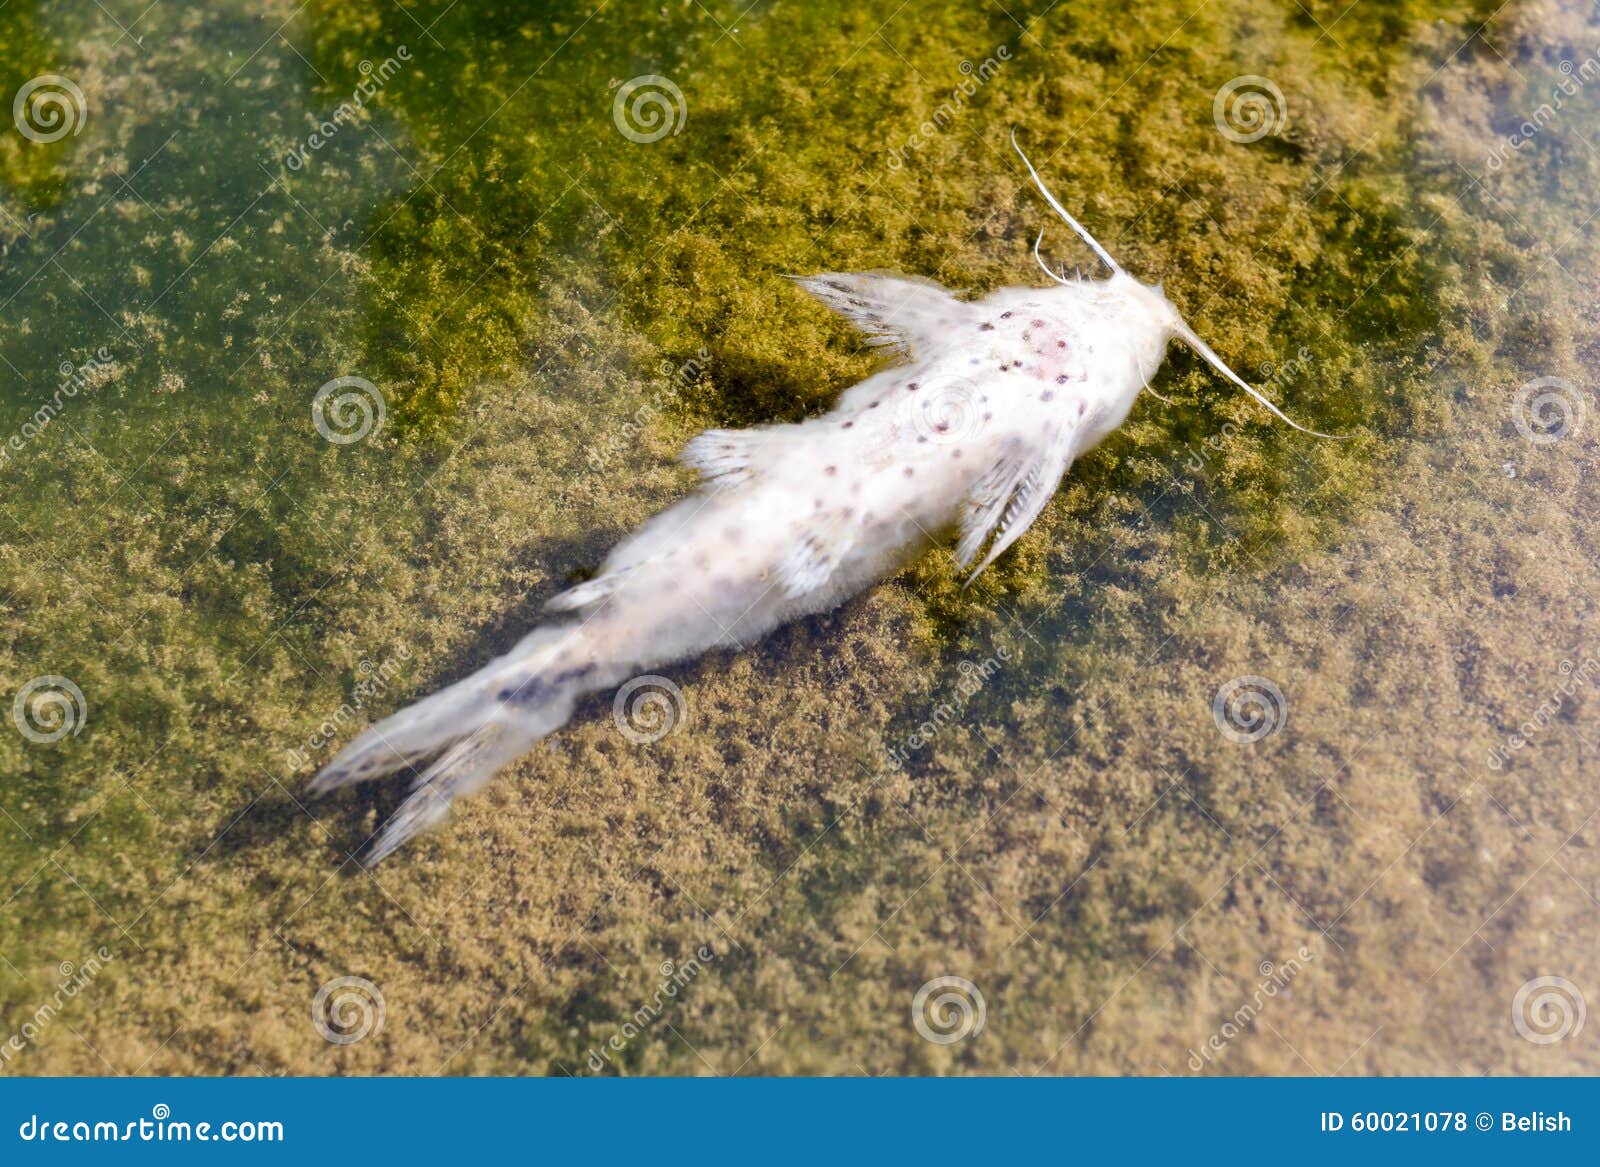 К чему снятся мертвые рыбы в воде. Река в Бангкоке рыбы. Дохлая рыба художник.